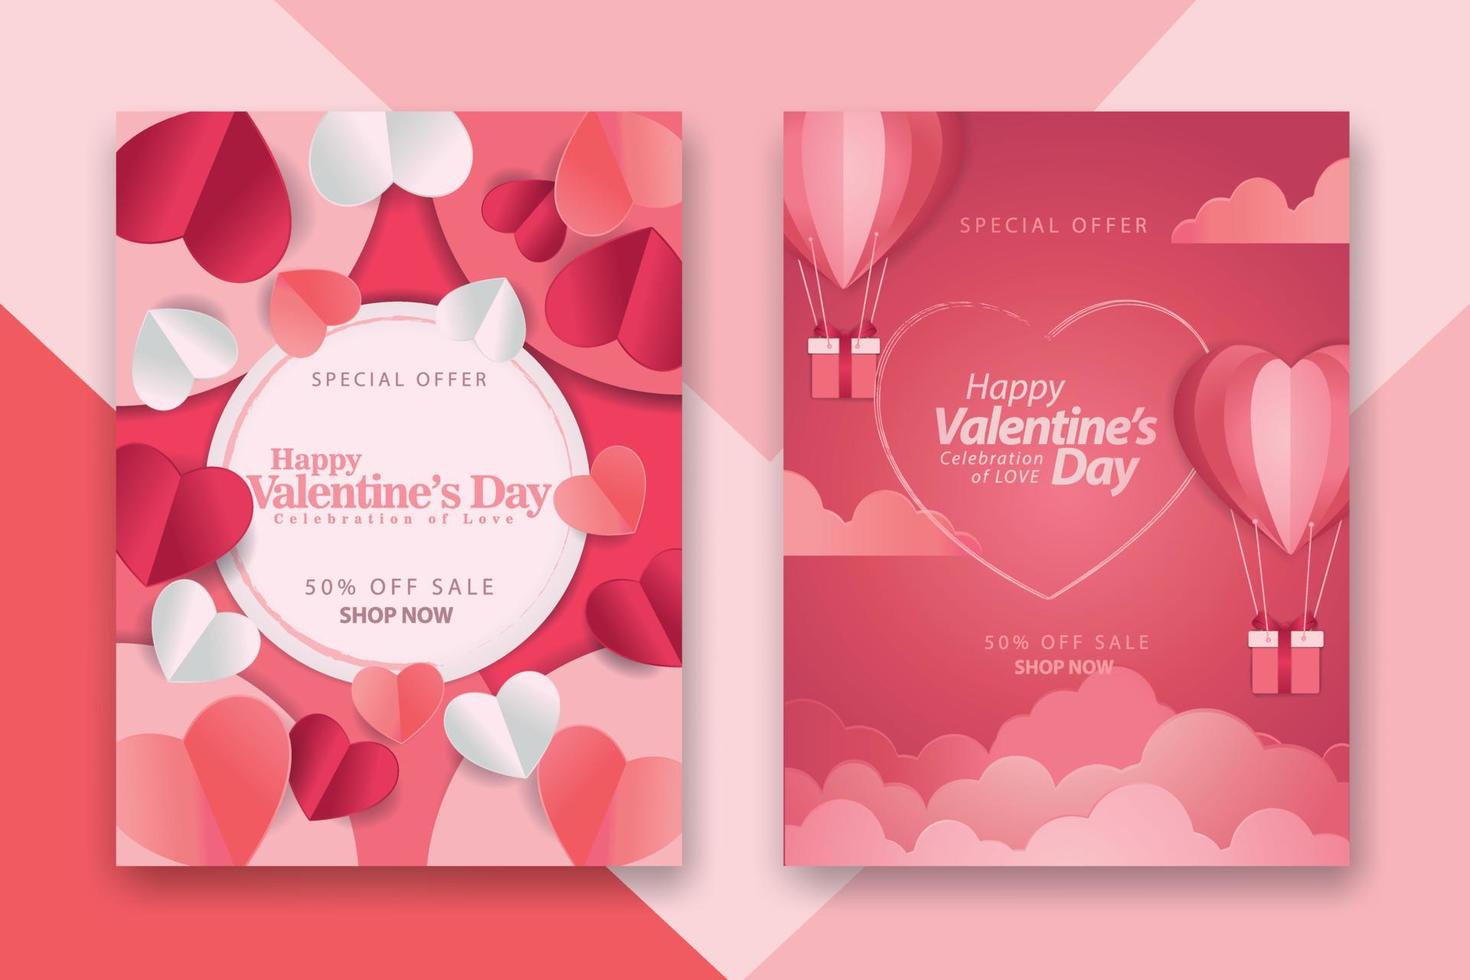 valentinstag-konzeptposter mit roten 3d- und rosa papierherzen und rahmen auf geometrischem hintergrund. süße Liebesverkaufsbanner oder Grußkarten vektor